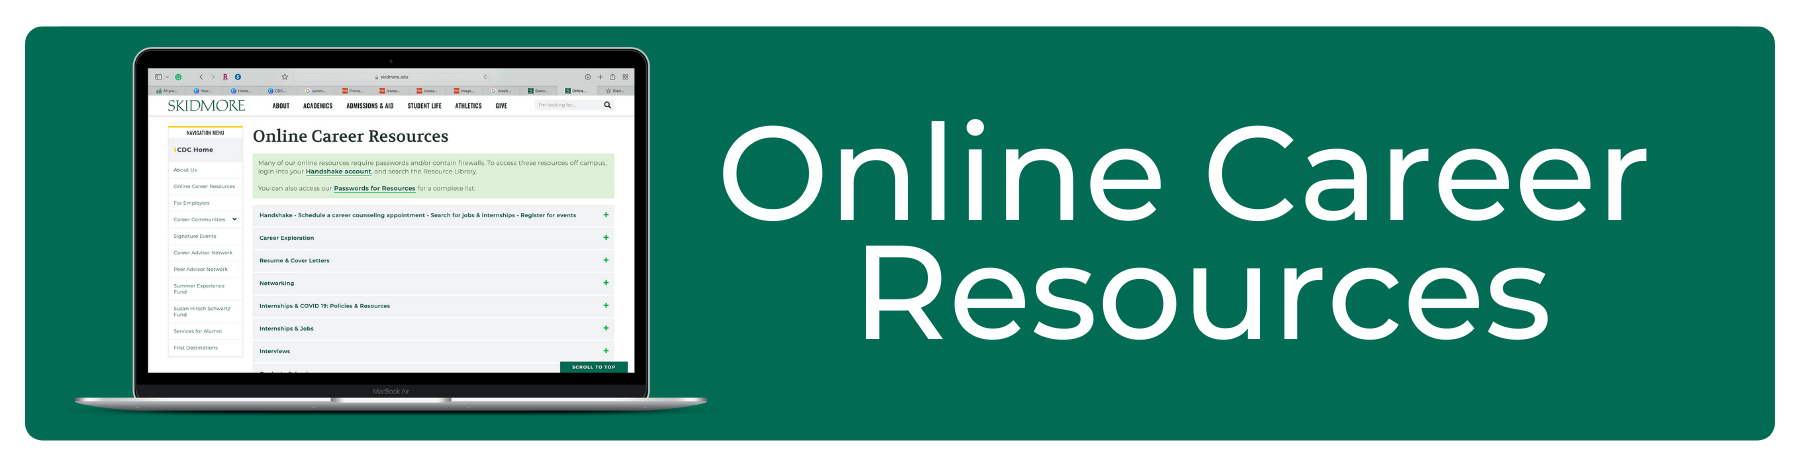 Online Career Resources